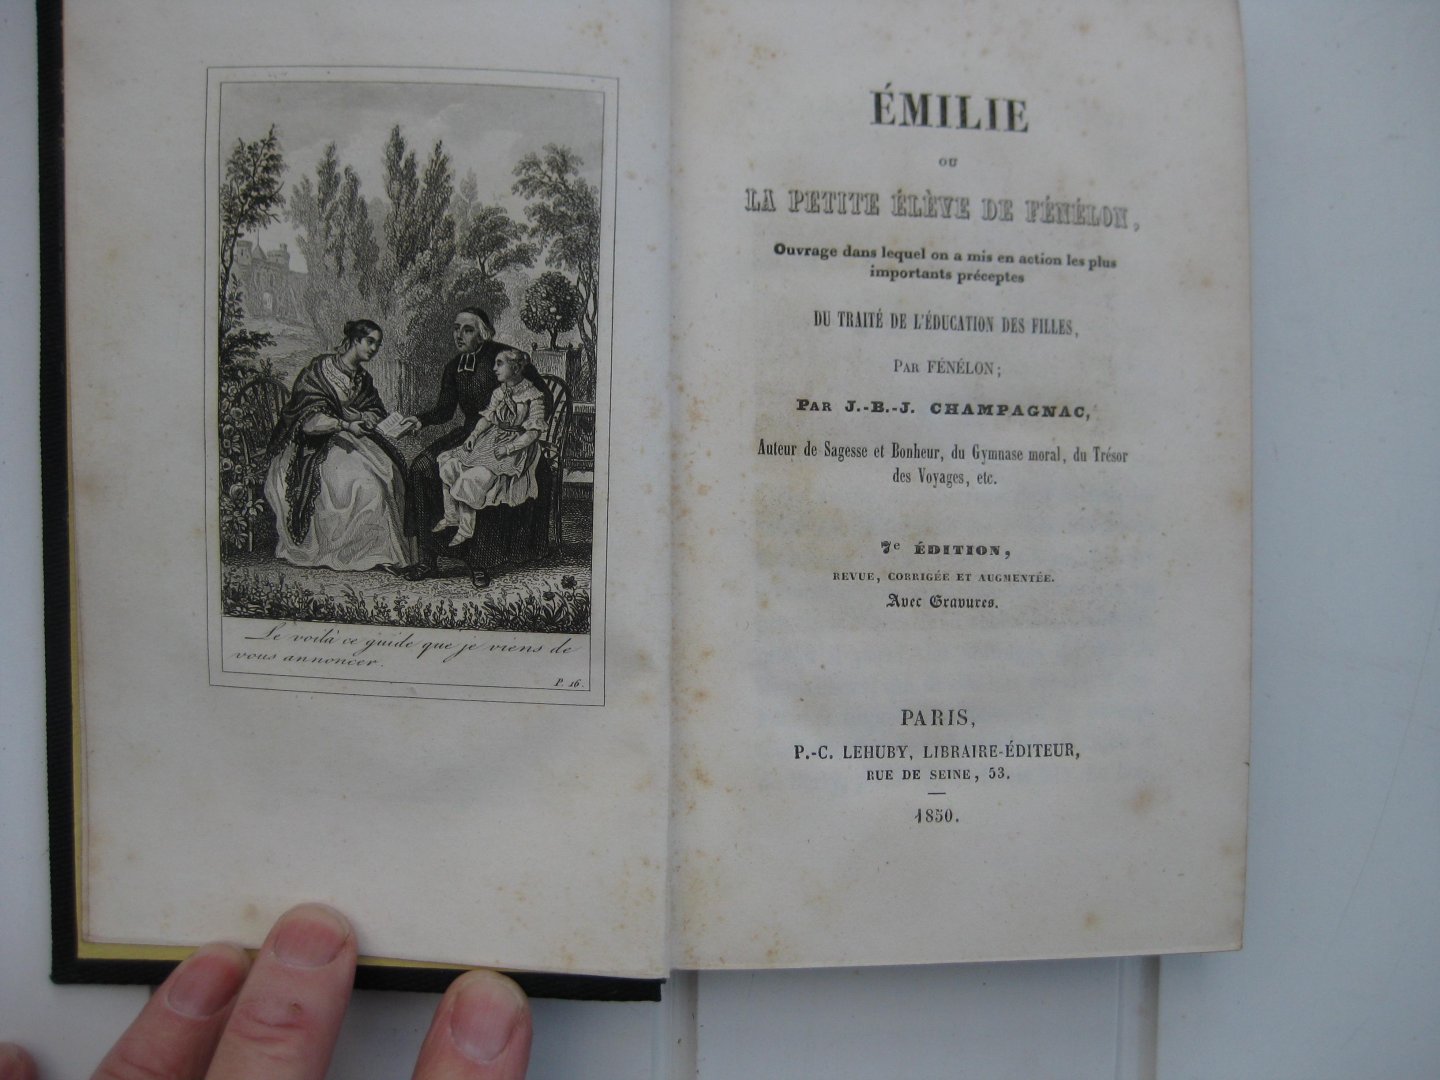 Champagnac, J.-B.-J. - Émilie ou la petite élève de Fénélon. Ouvrage dans lequel on a mis en action les plus importants préceptes du Traité de l'éducation des filles, par Fénélon.